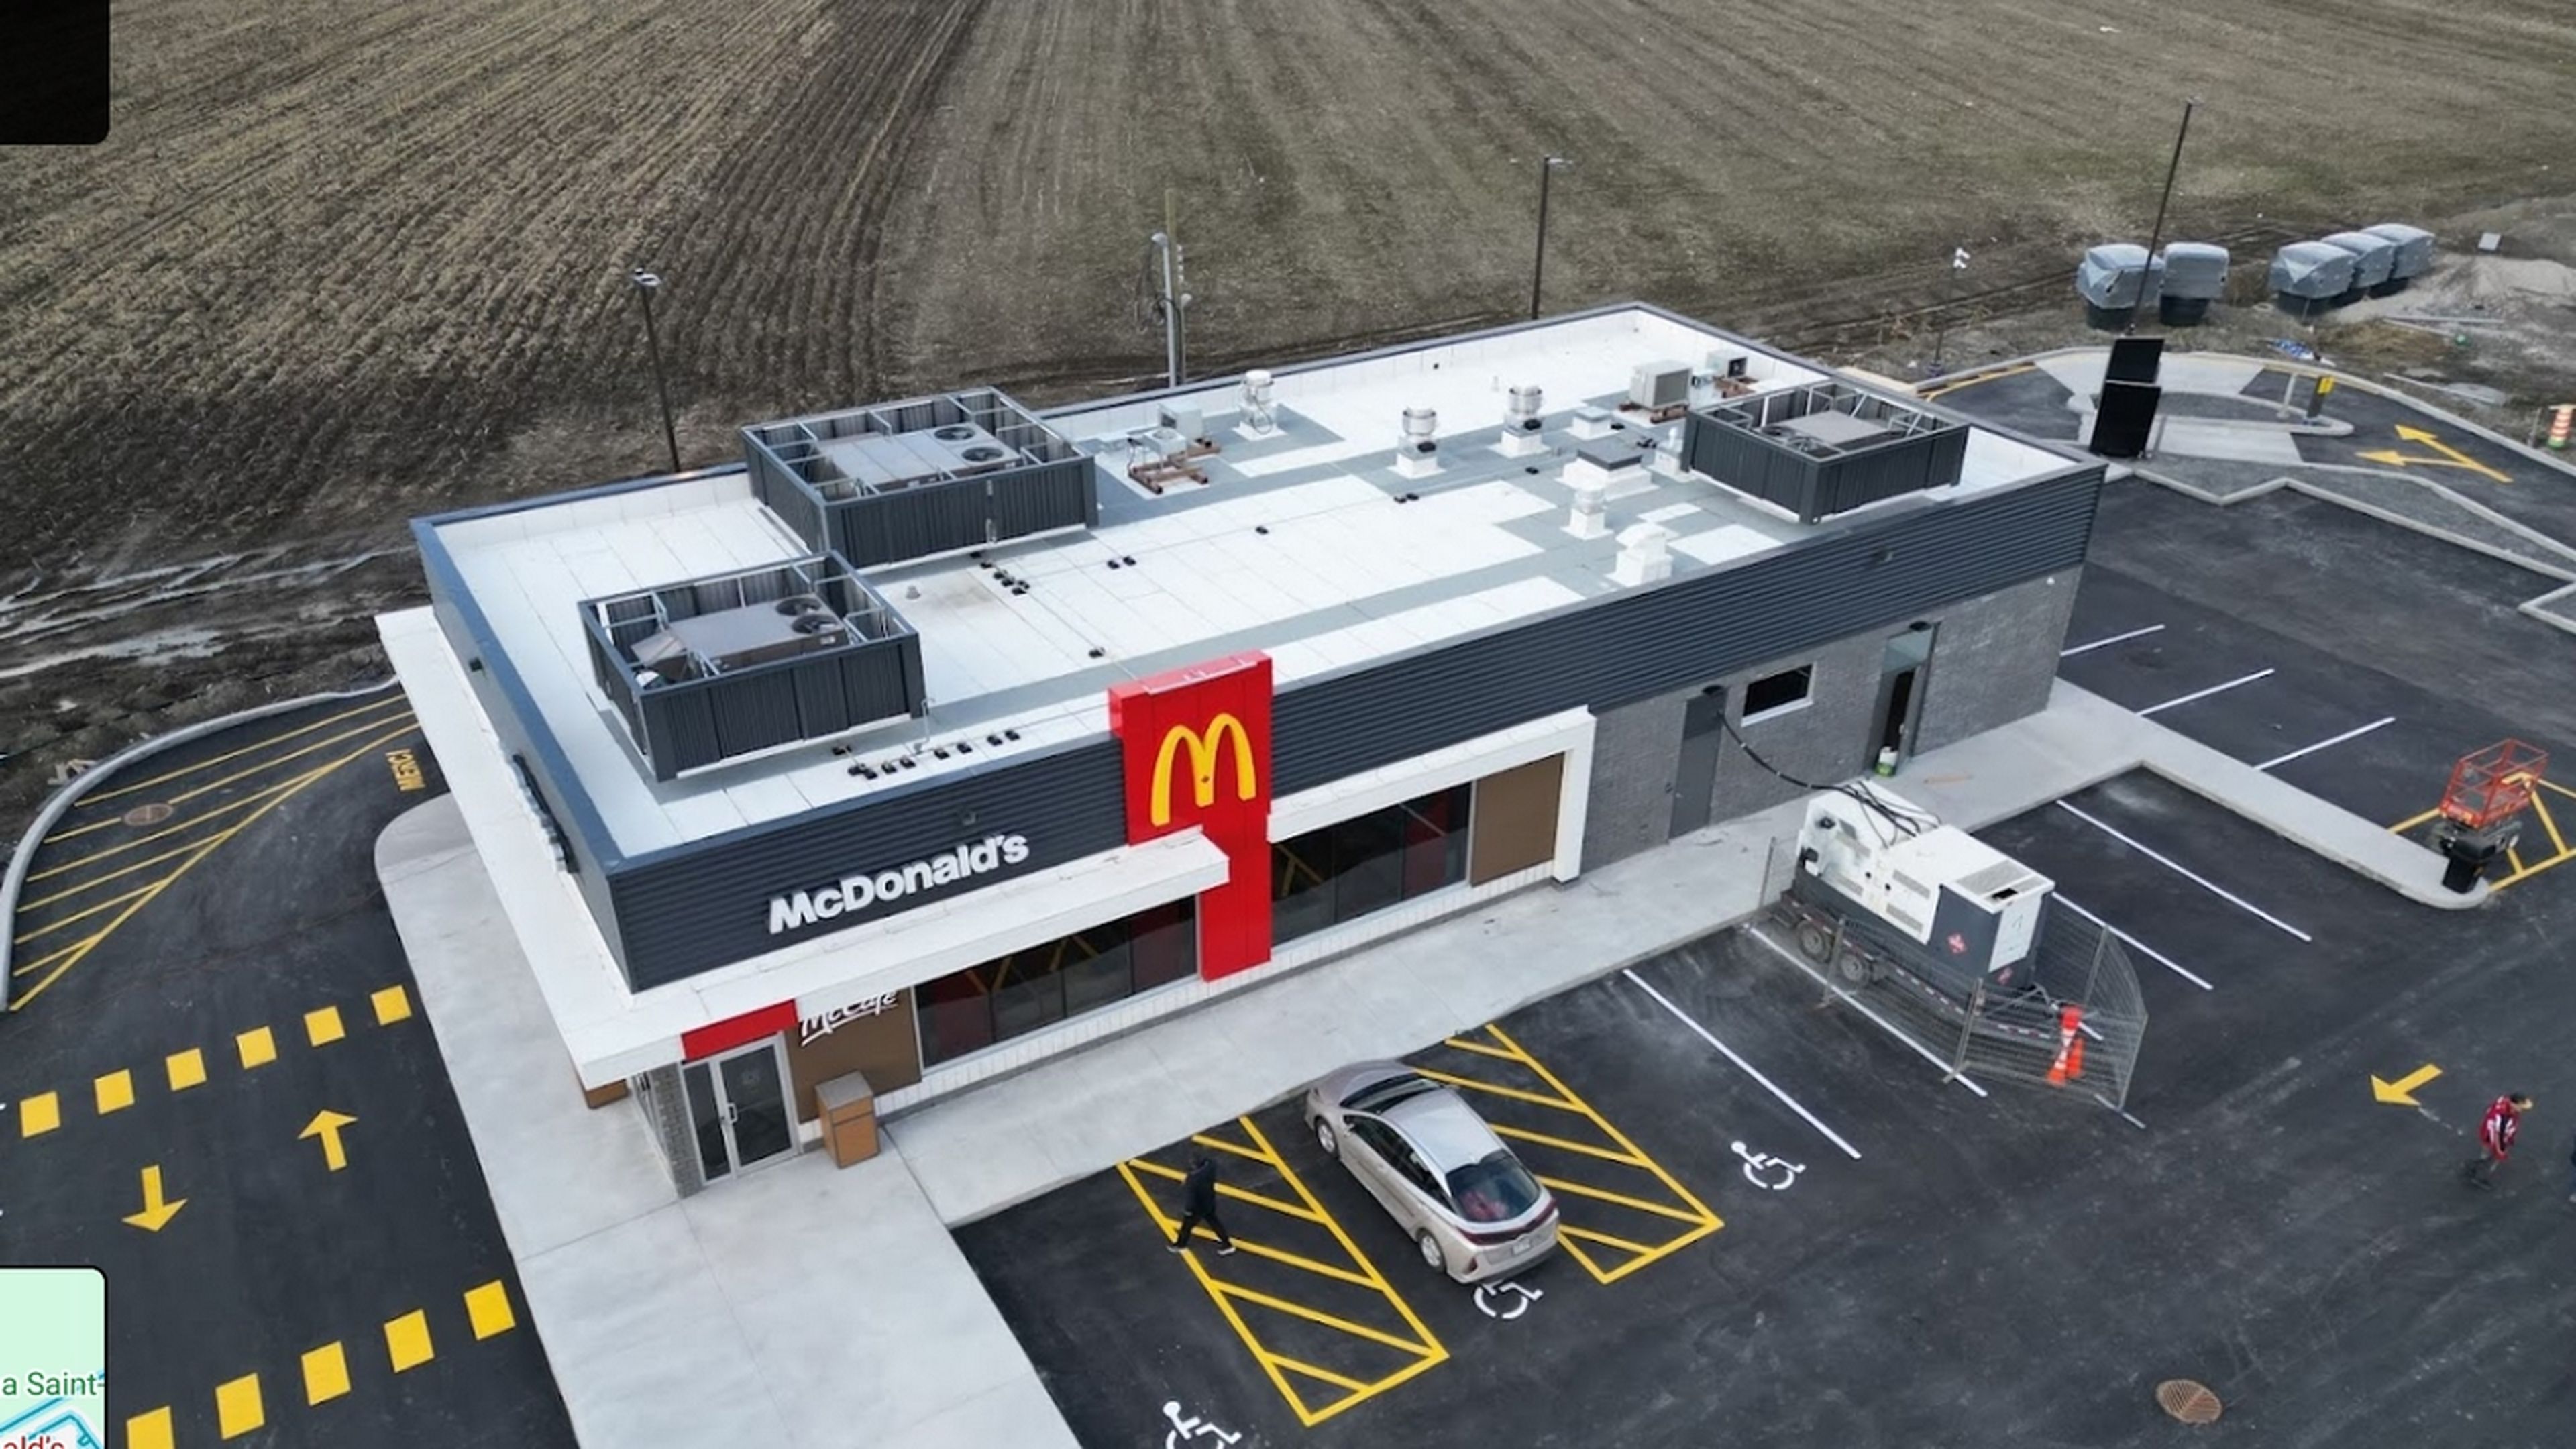 Abren un McDonald's en mitad de la nada, y las teorías conspiranoicas se disparan